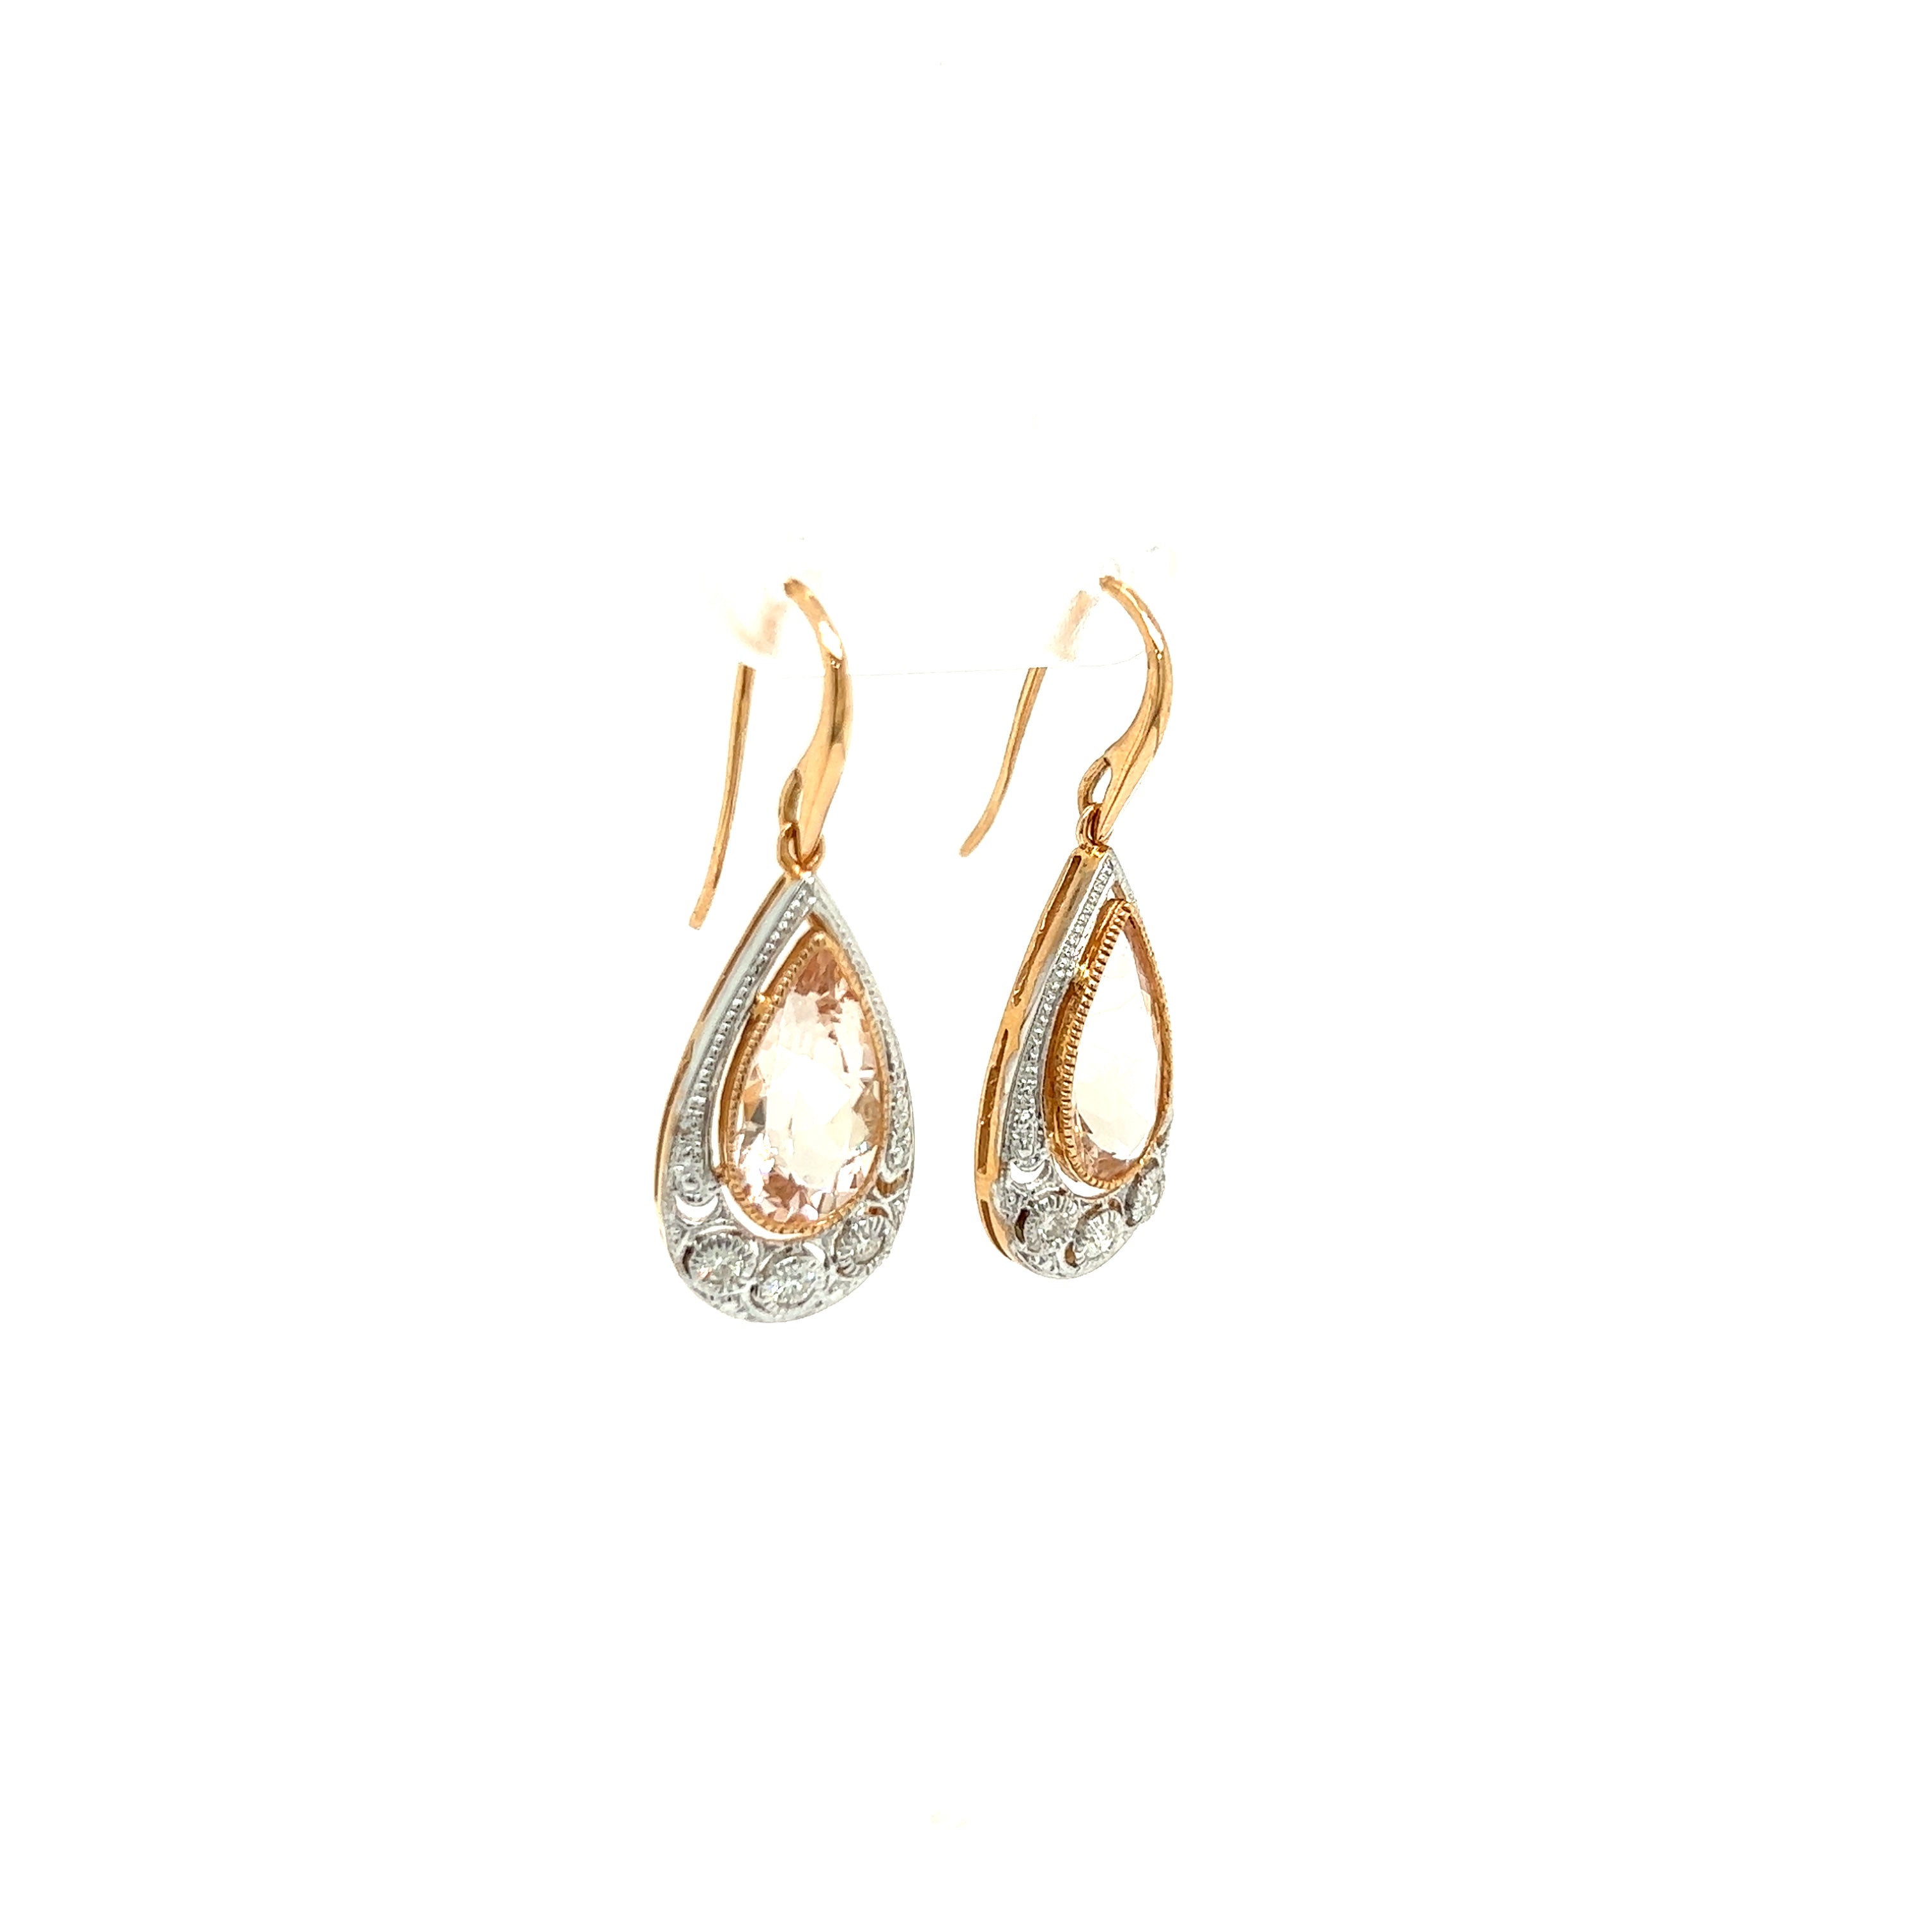 9ct rose gold morganite and diamond earrings.